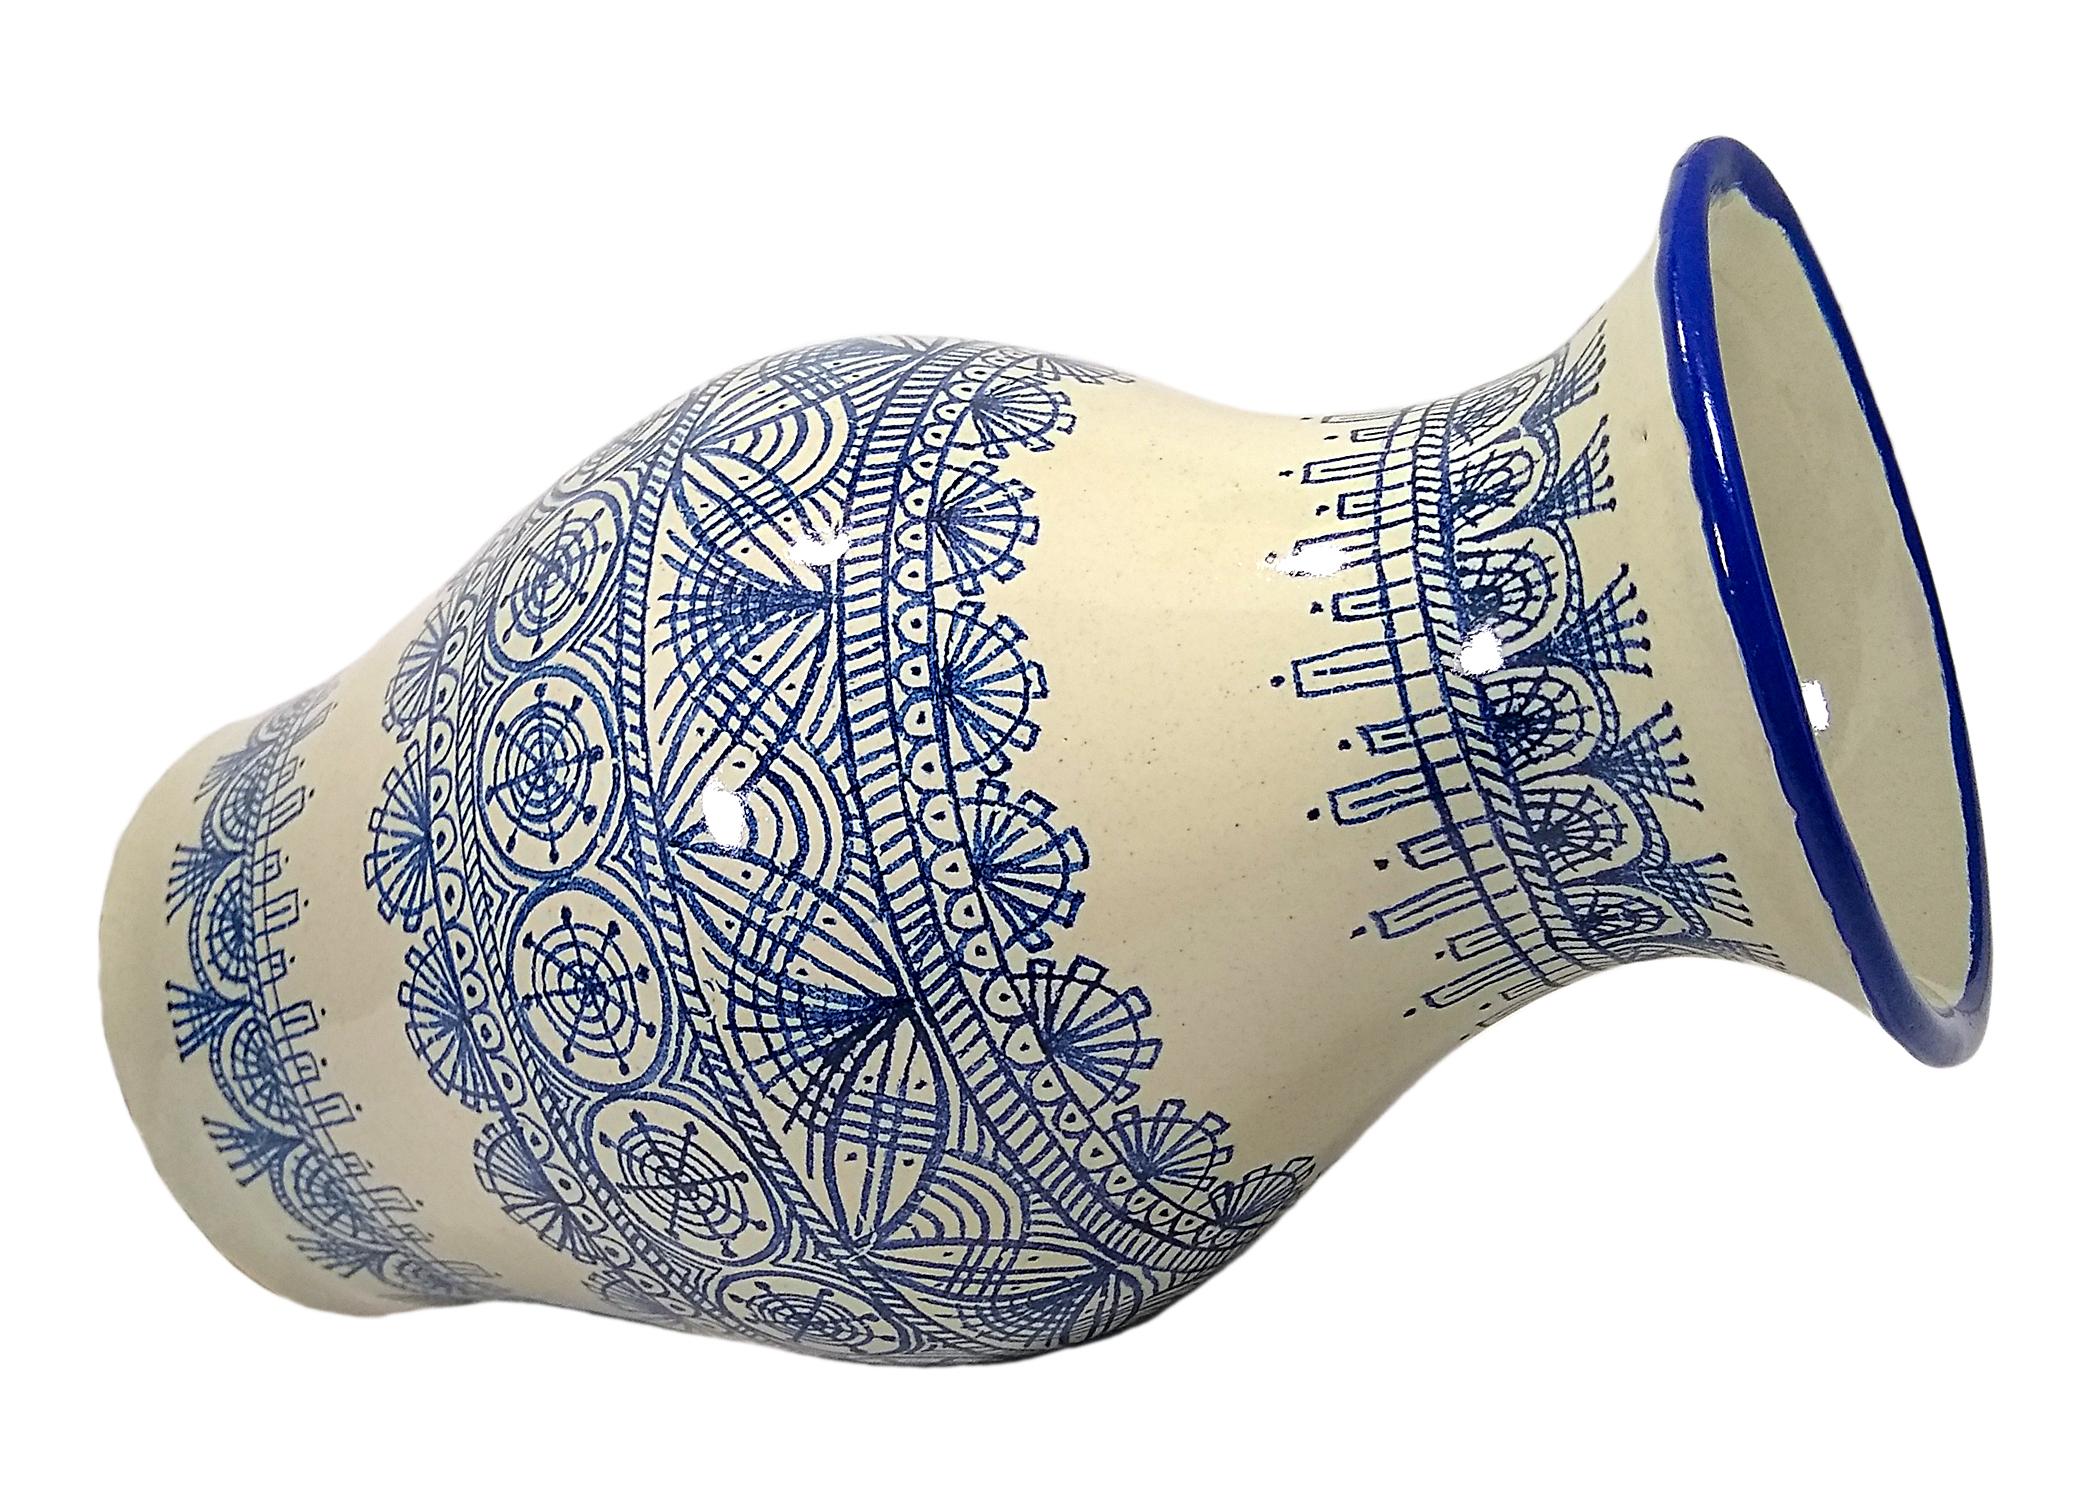 Elegante weiß-blaue Vase, hergestellt in der Talavera-Technik. Der Künstler Cesar Torres porträtiert die koloniale Kunst Mexikos. 

Die Talavera ist nicht nur eine einfache bemalte Keramik: Ihre exquisite Dekoration ist das Ergebnis eines delikaten